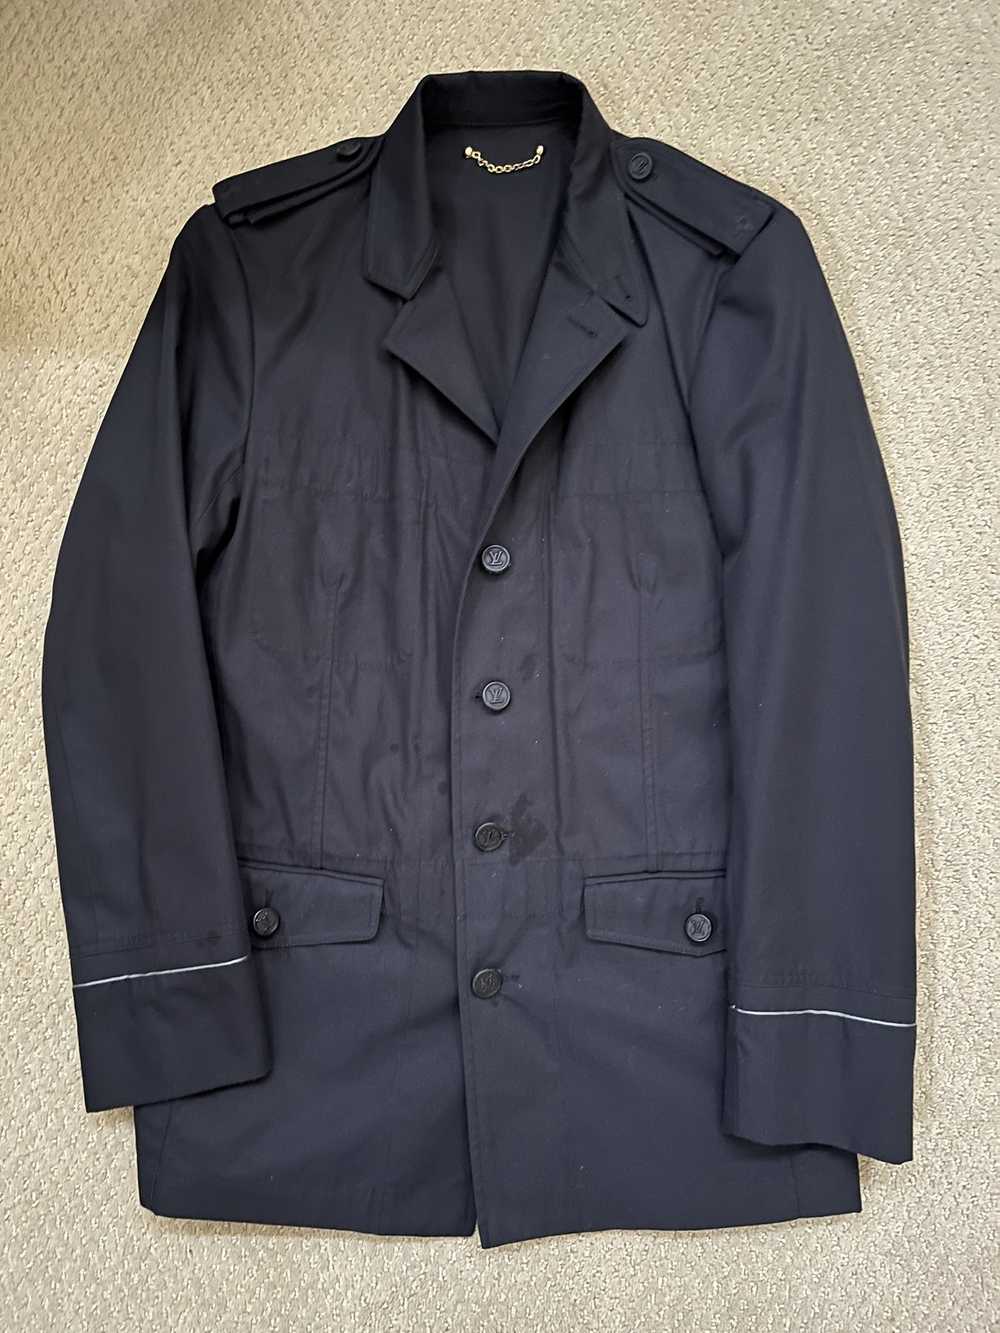 Authentic Louis Vuitton Uniform blazer tailor black 3/4 sleeves